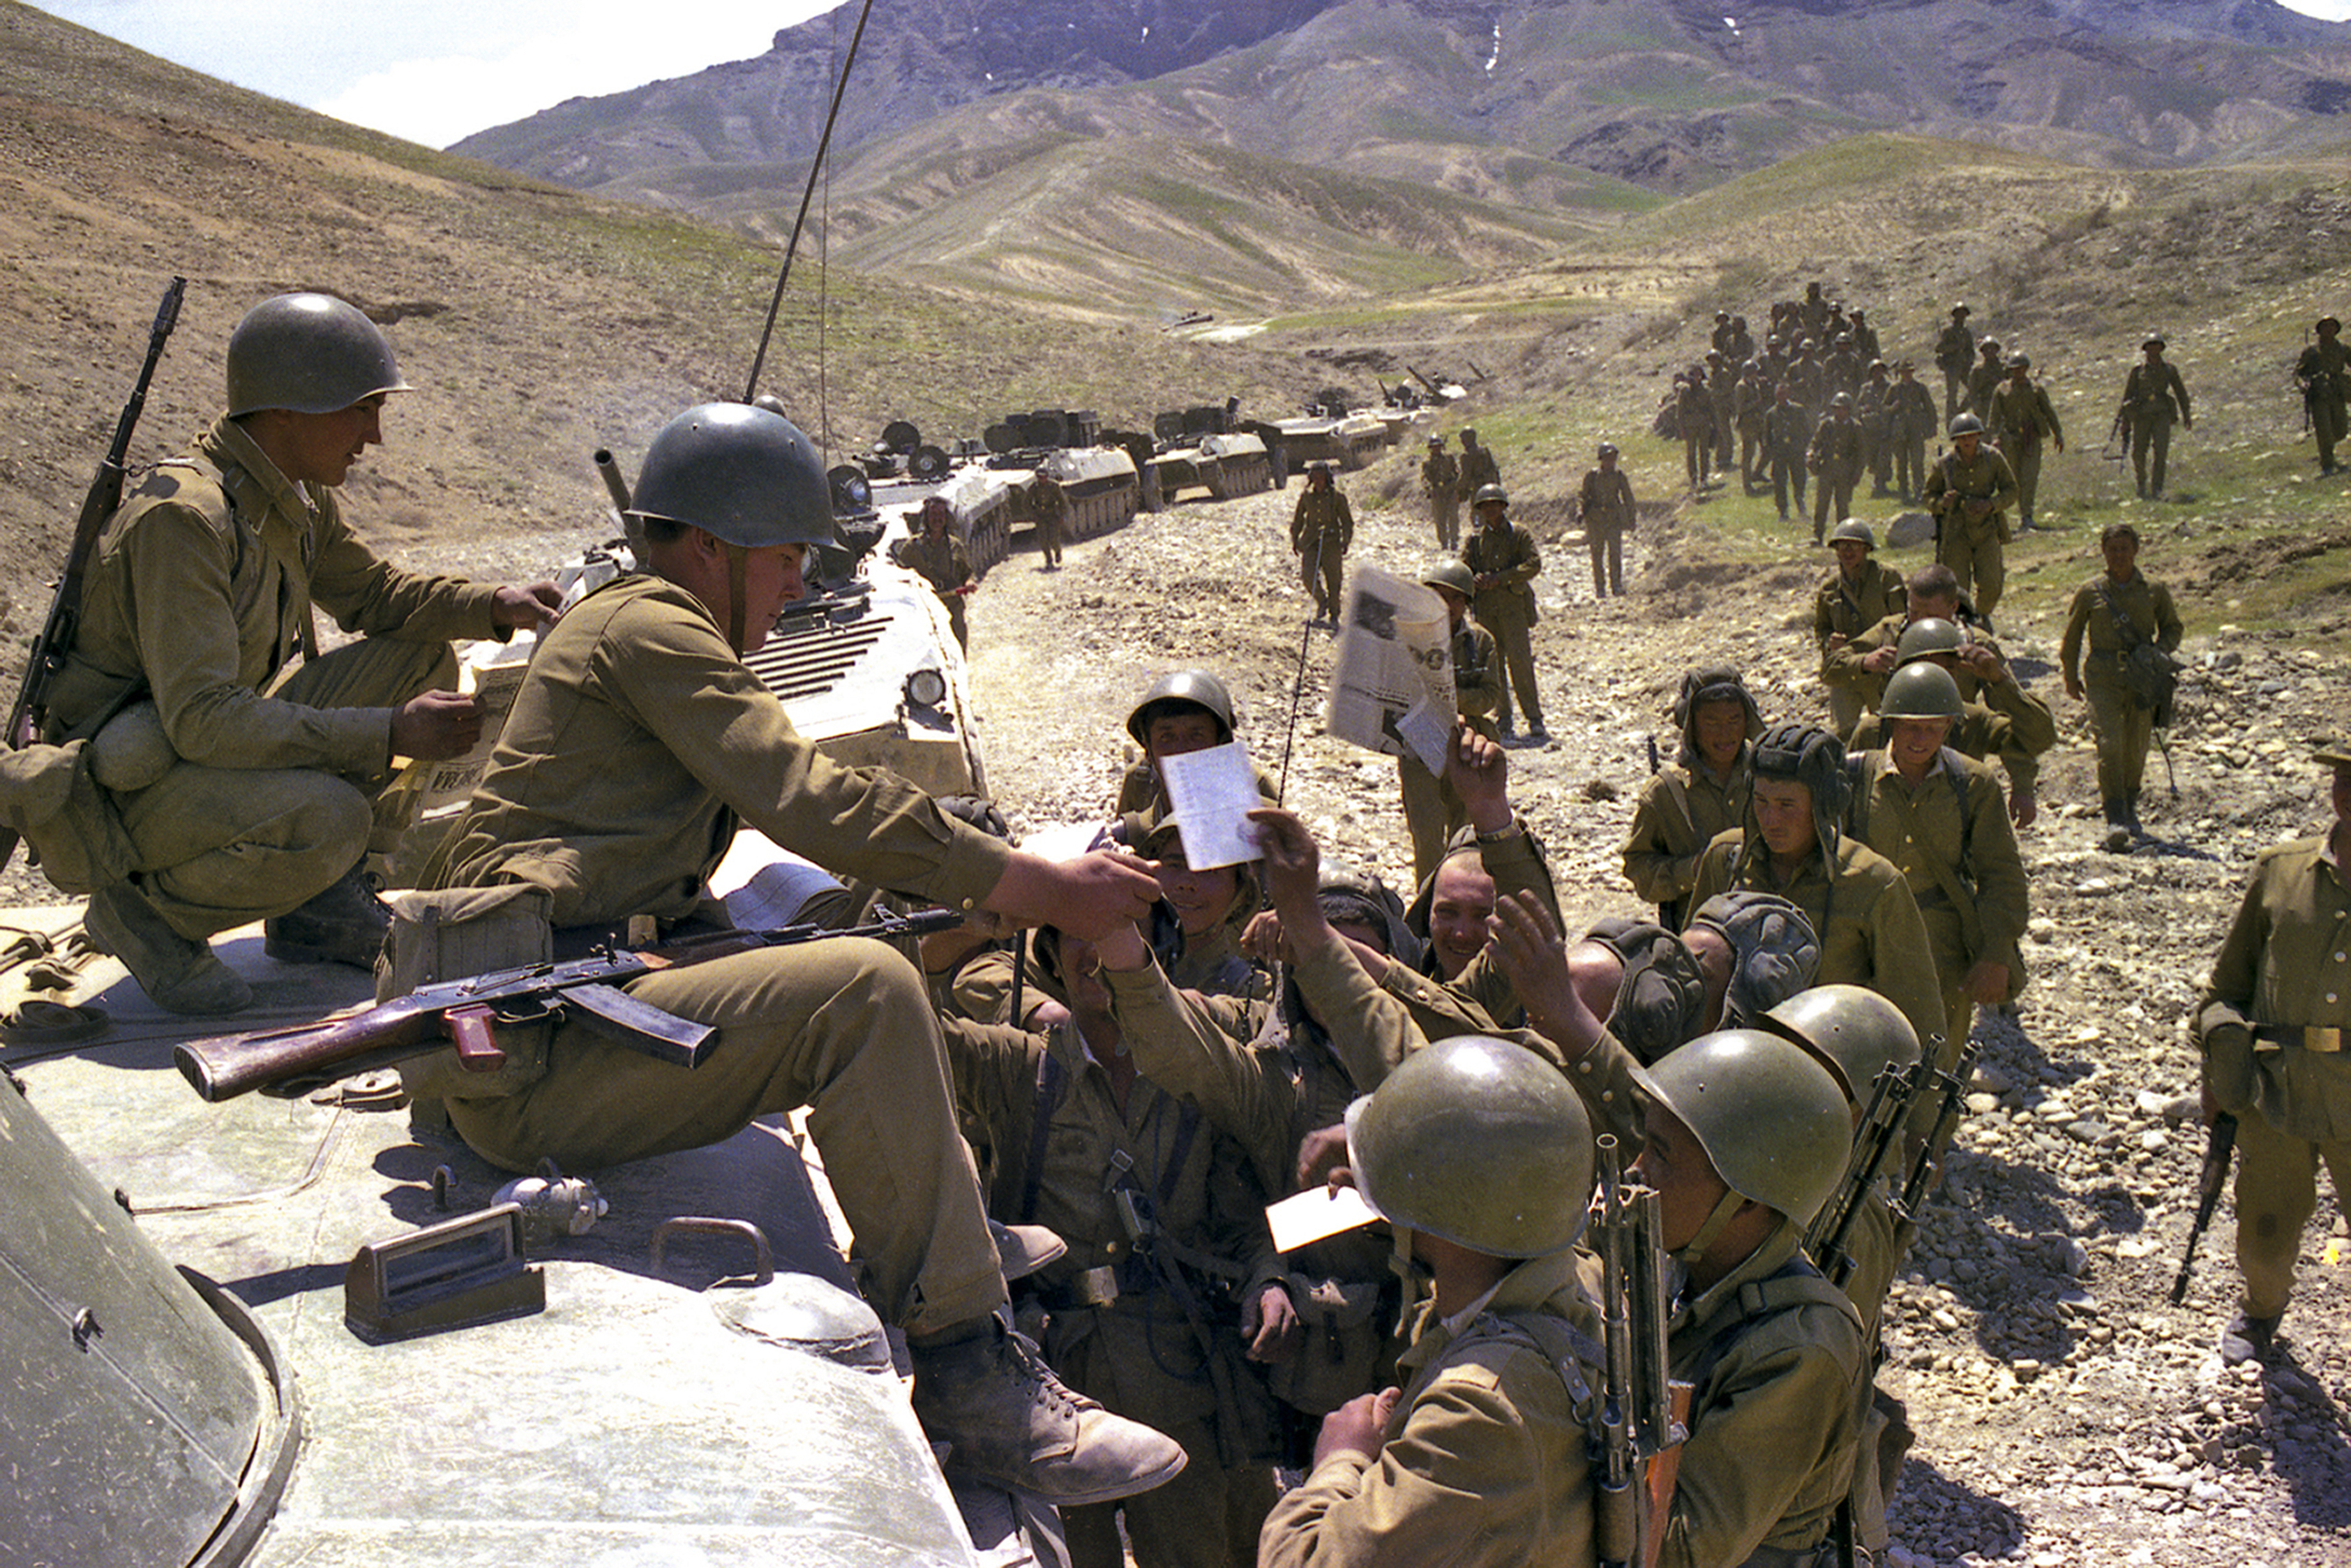 ARCHIVO - En esta foto sin fecha, los soldados soviéticos reciben periódicos y correo cuando un convoy se detiene en algún lugar de Afganistán.

